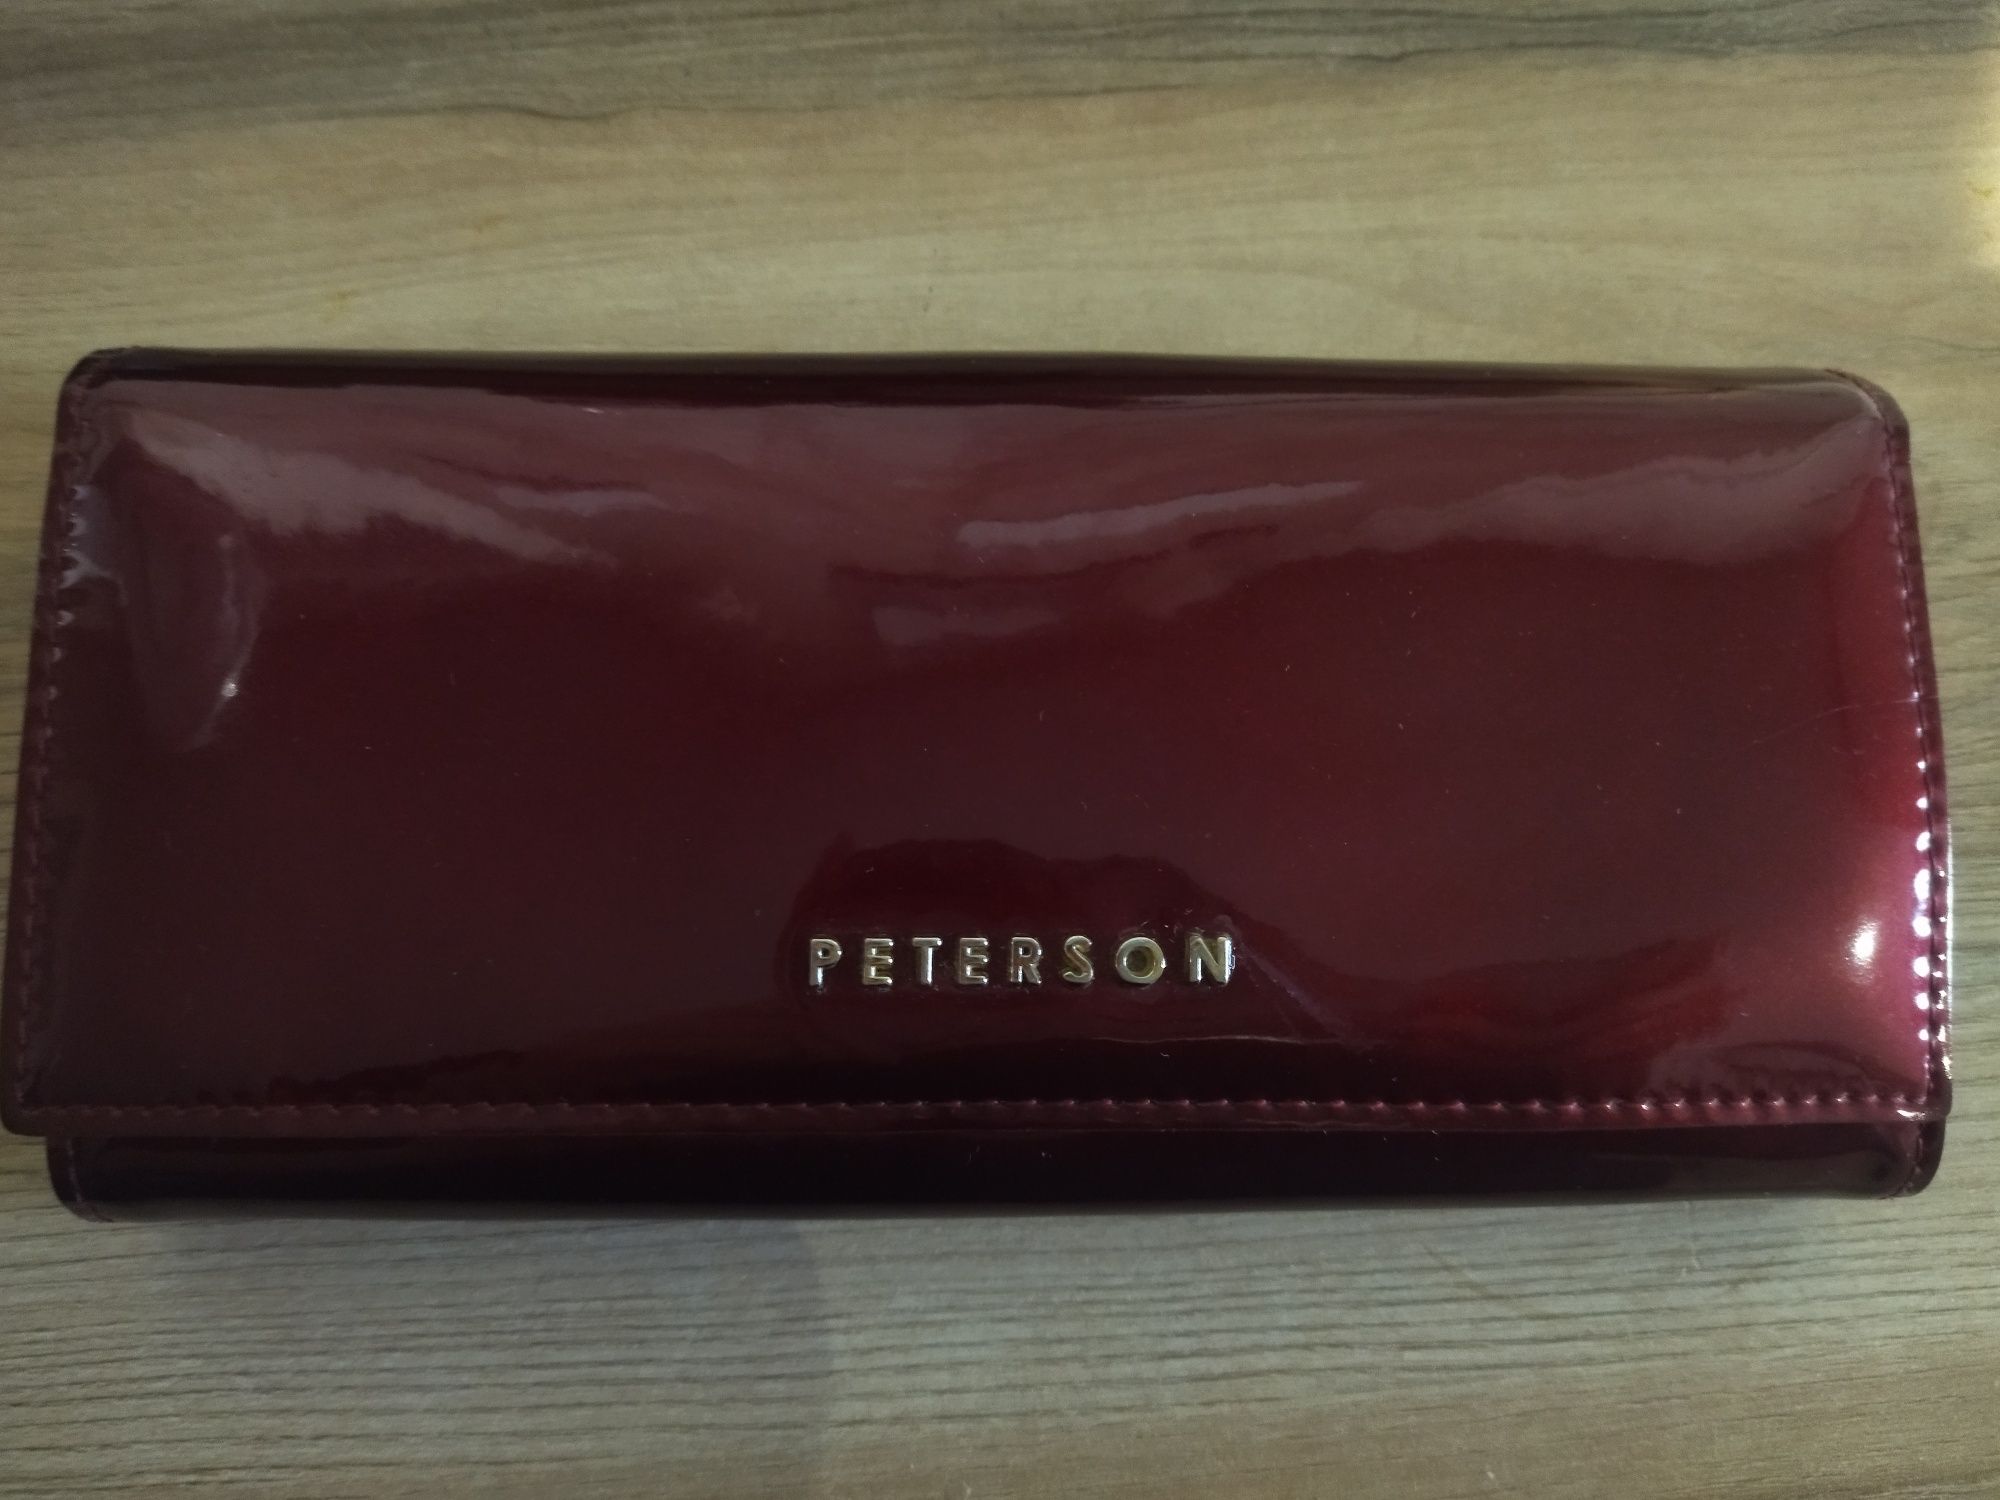 Duży portfel Peterson skóra naturalna lakierowany bordowy piękny